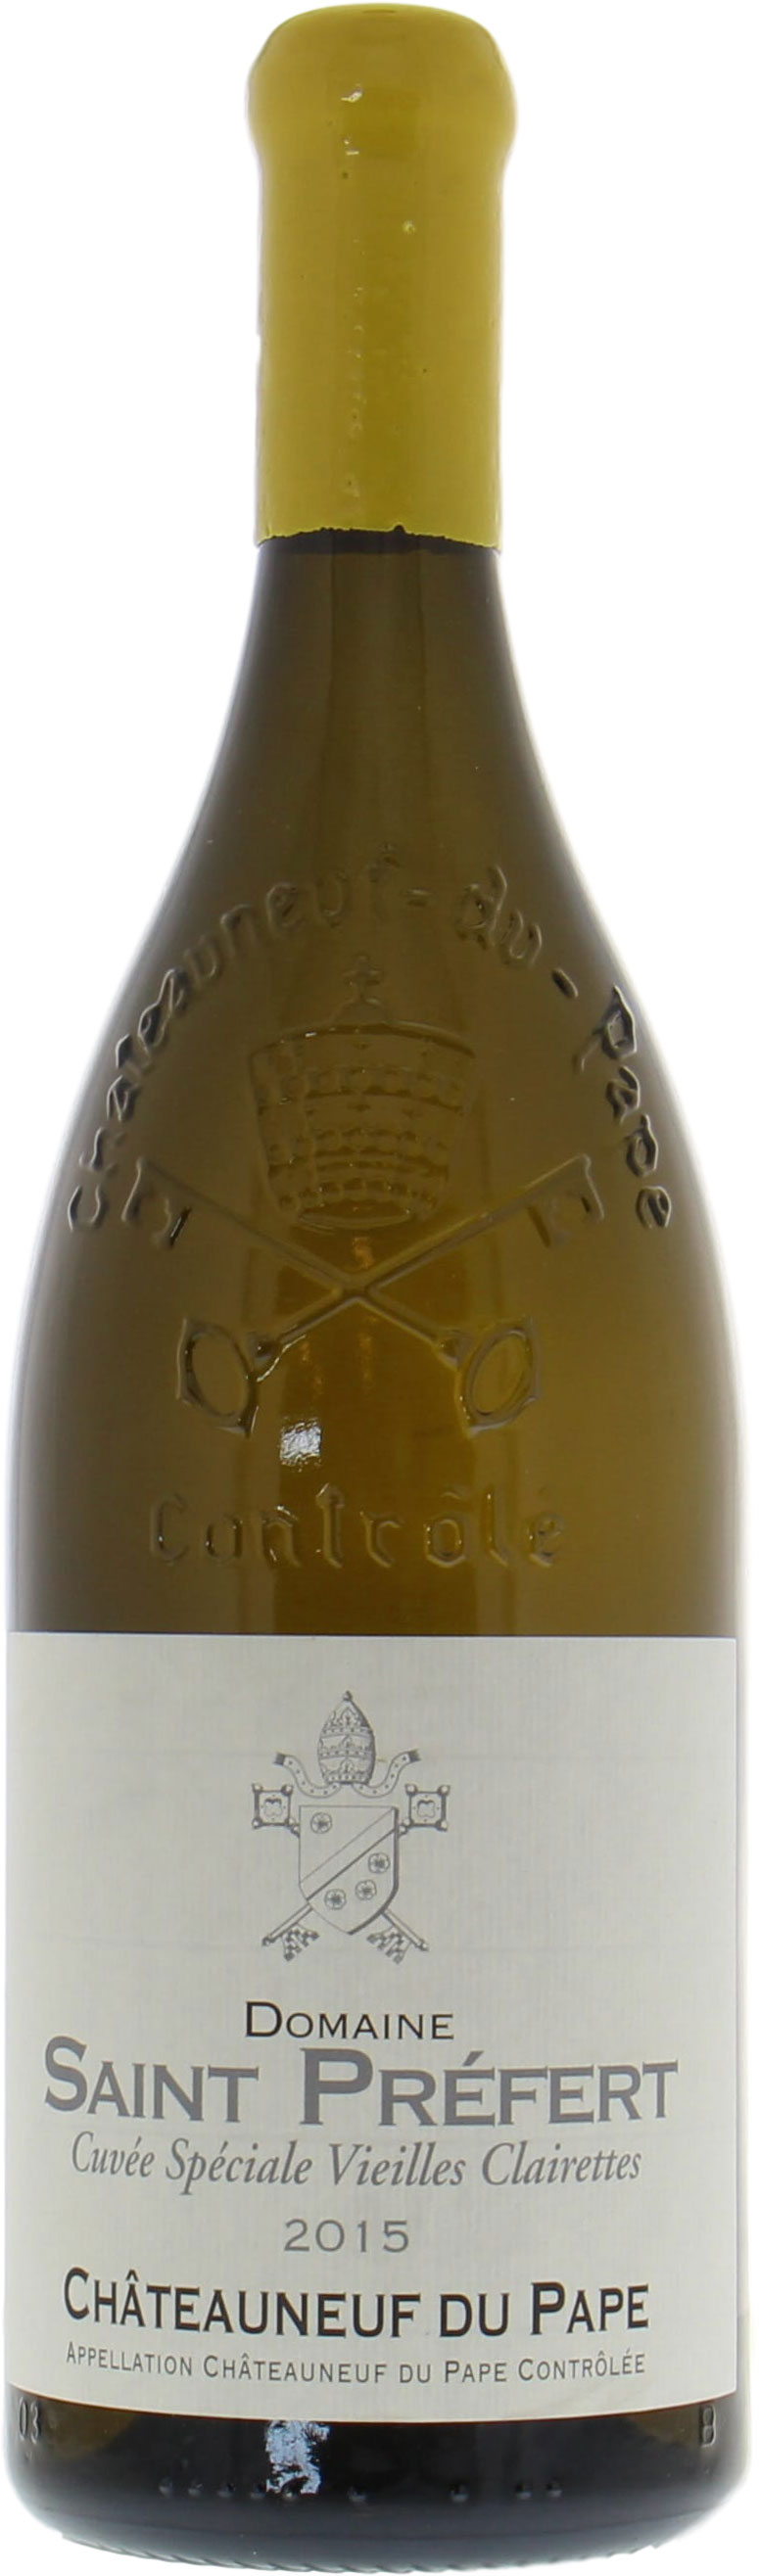 Domaine de Saint-Prefert - Chateauneuf du Pape Chateauneuf du Pape Vieilles Vignes de Clairette Blanc 2015